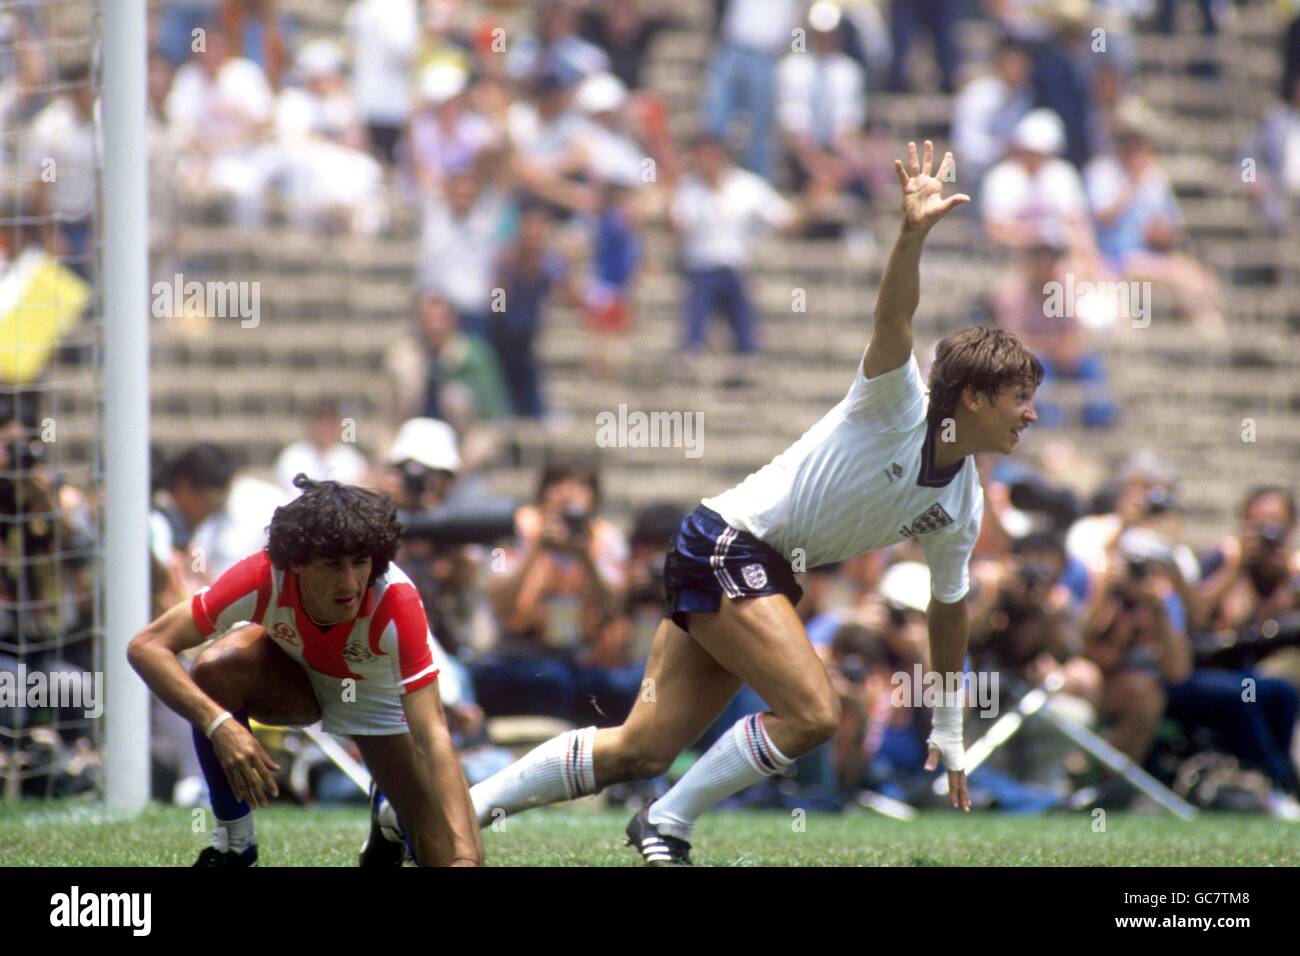 Calcio - Coppa del mondo Messico 1986 - secondo turno - Inghilterra / Paraguay - Estadio Azteca, Città del Messico. Gary Lineker dell'Inghilterra festeggia il raggiungimento di uno dei suoi due gol mentre Cesar Zabala del Paraguay sembra abbattuto Foto Stock